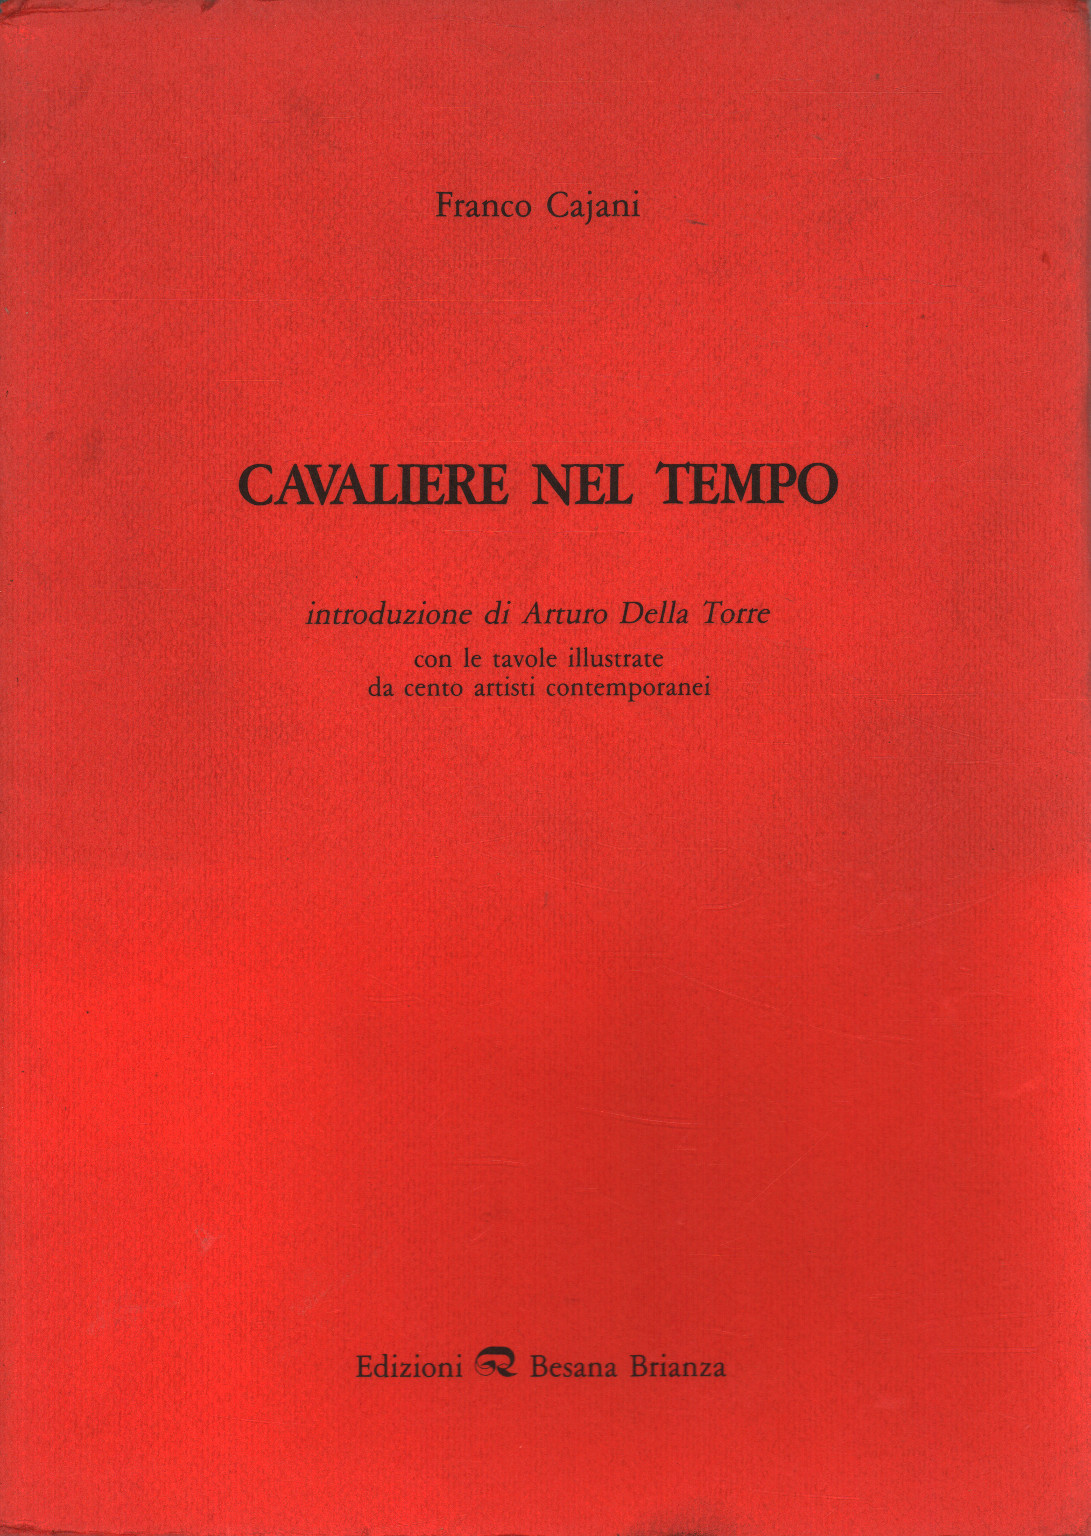 Cavaliere nel tempo (1987-1988), s.a.